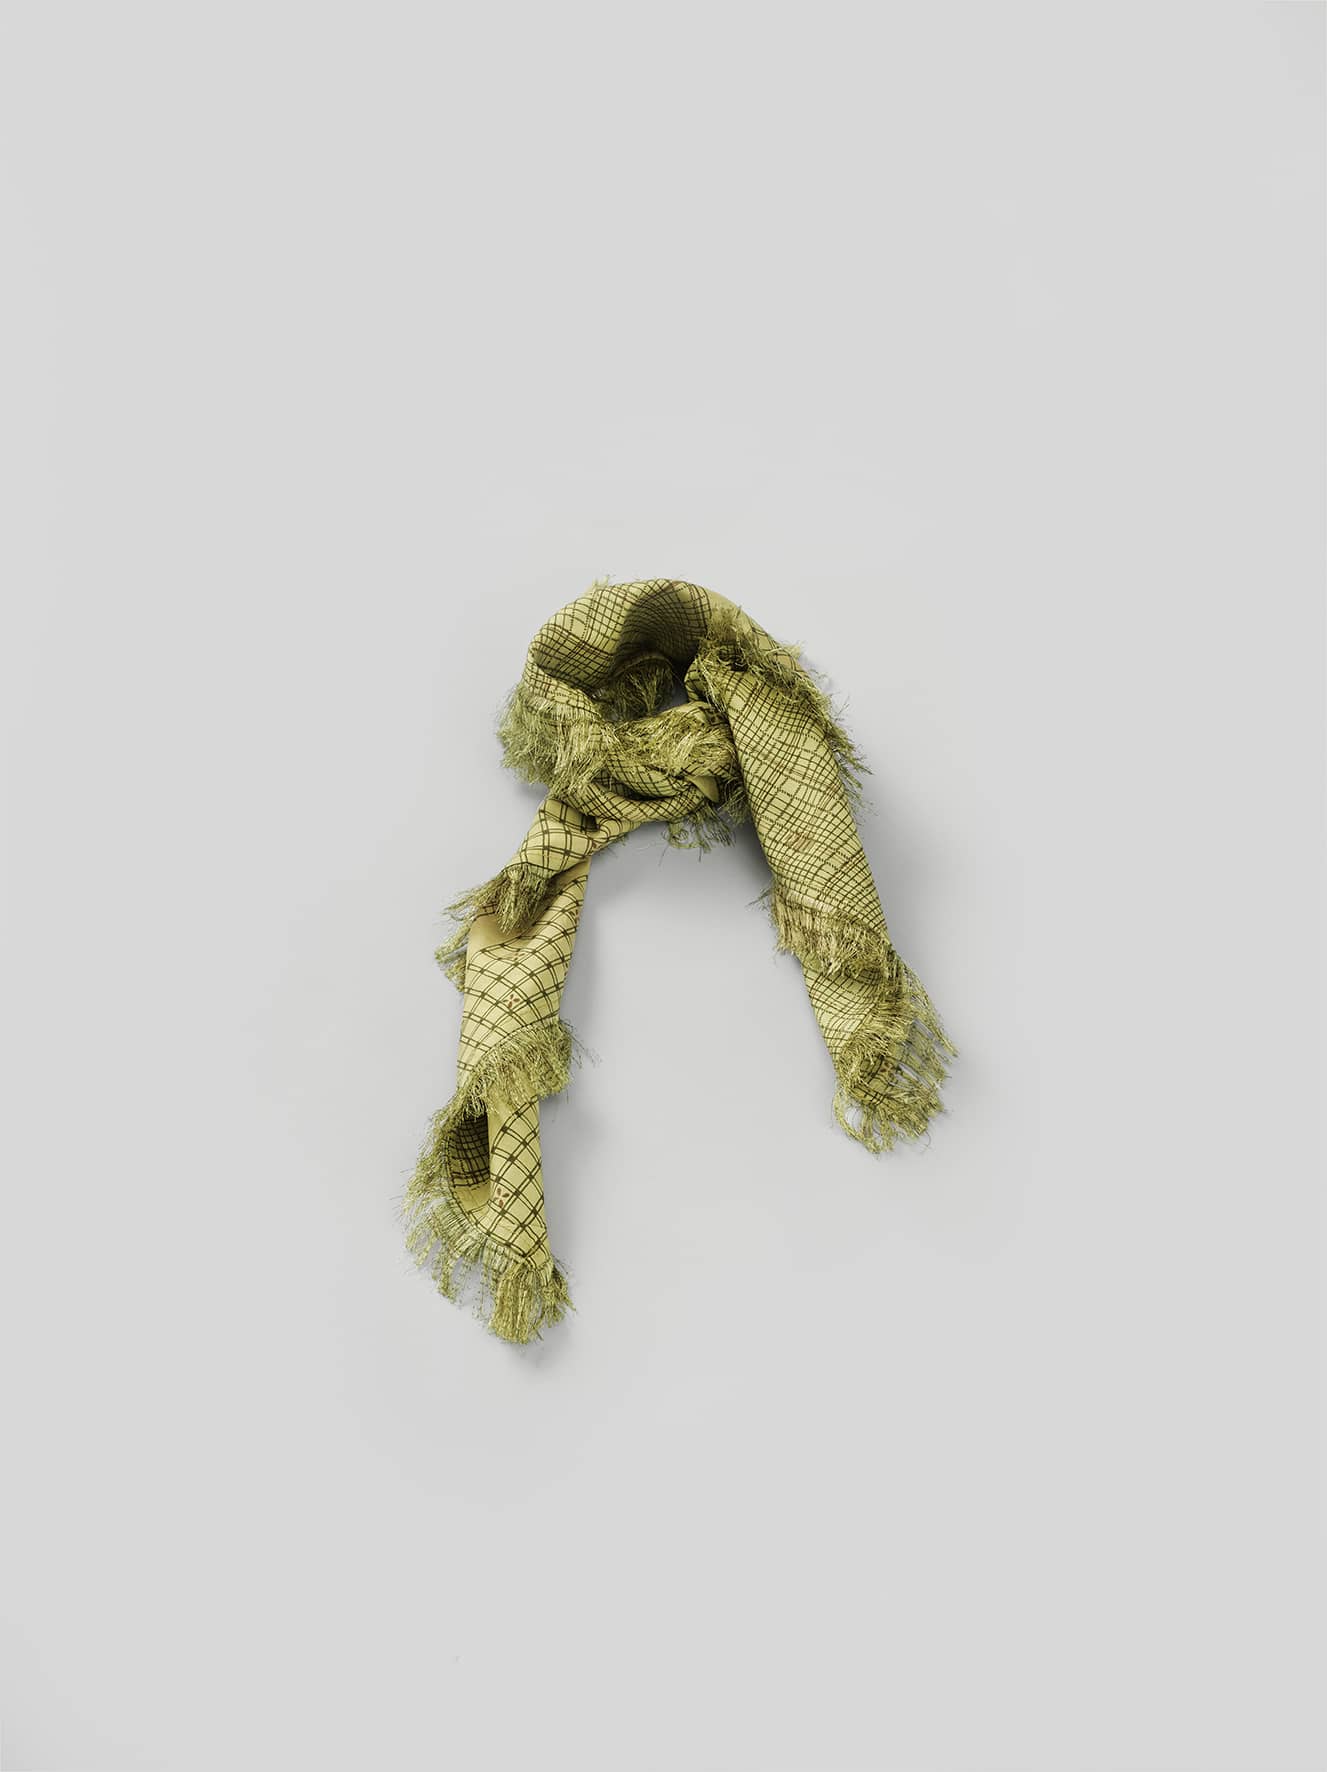 Goa sari scarf - Green tones